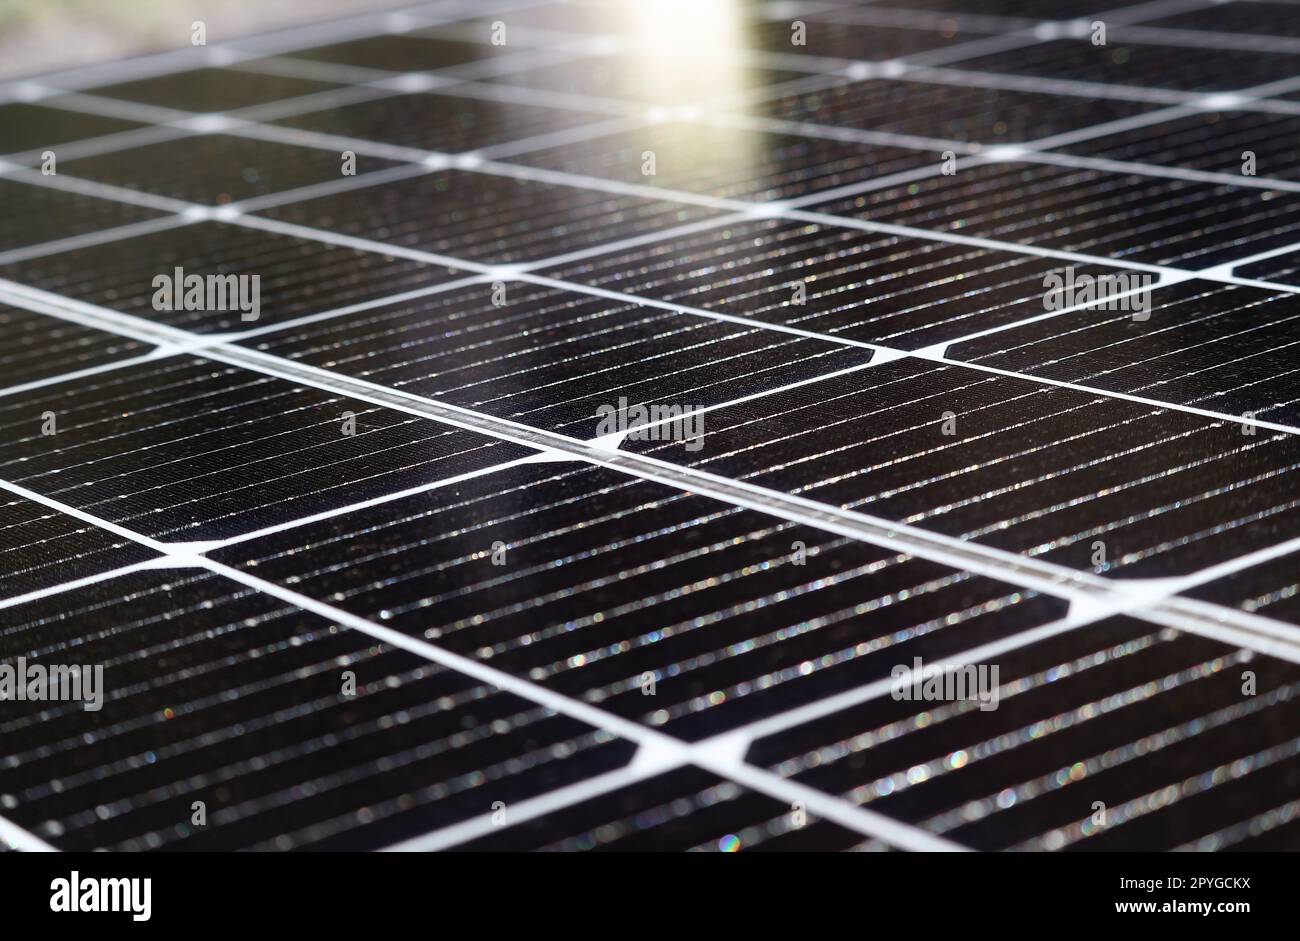 Fotovoltaik fotovoltaik sistem Stockfotos, lizenzfreie Fotovoltaik